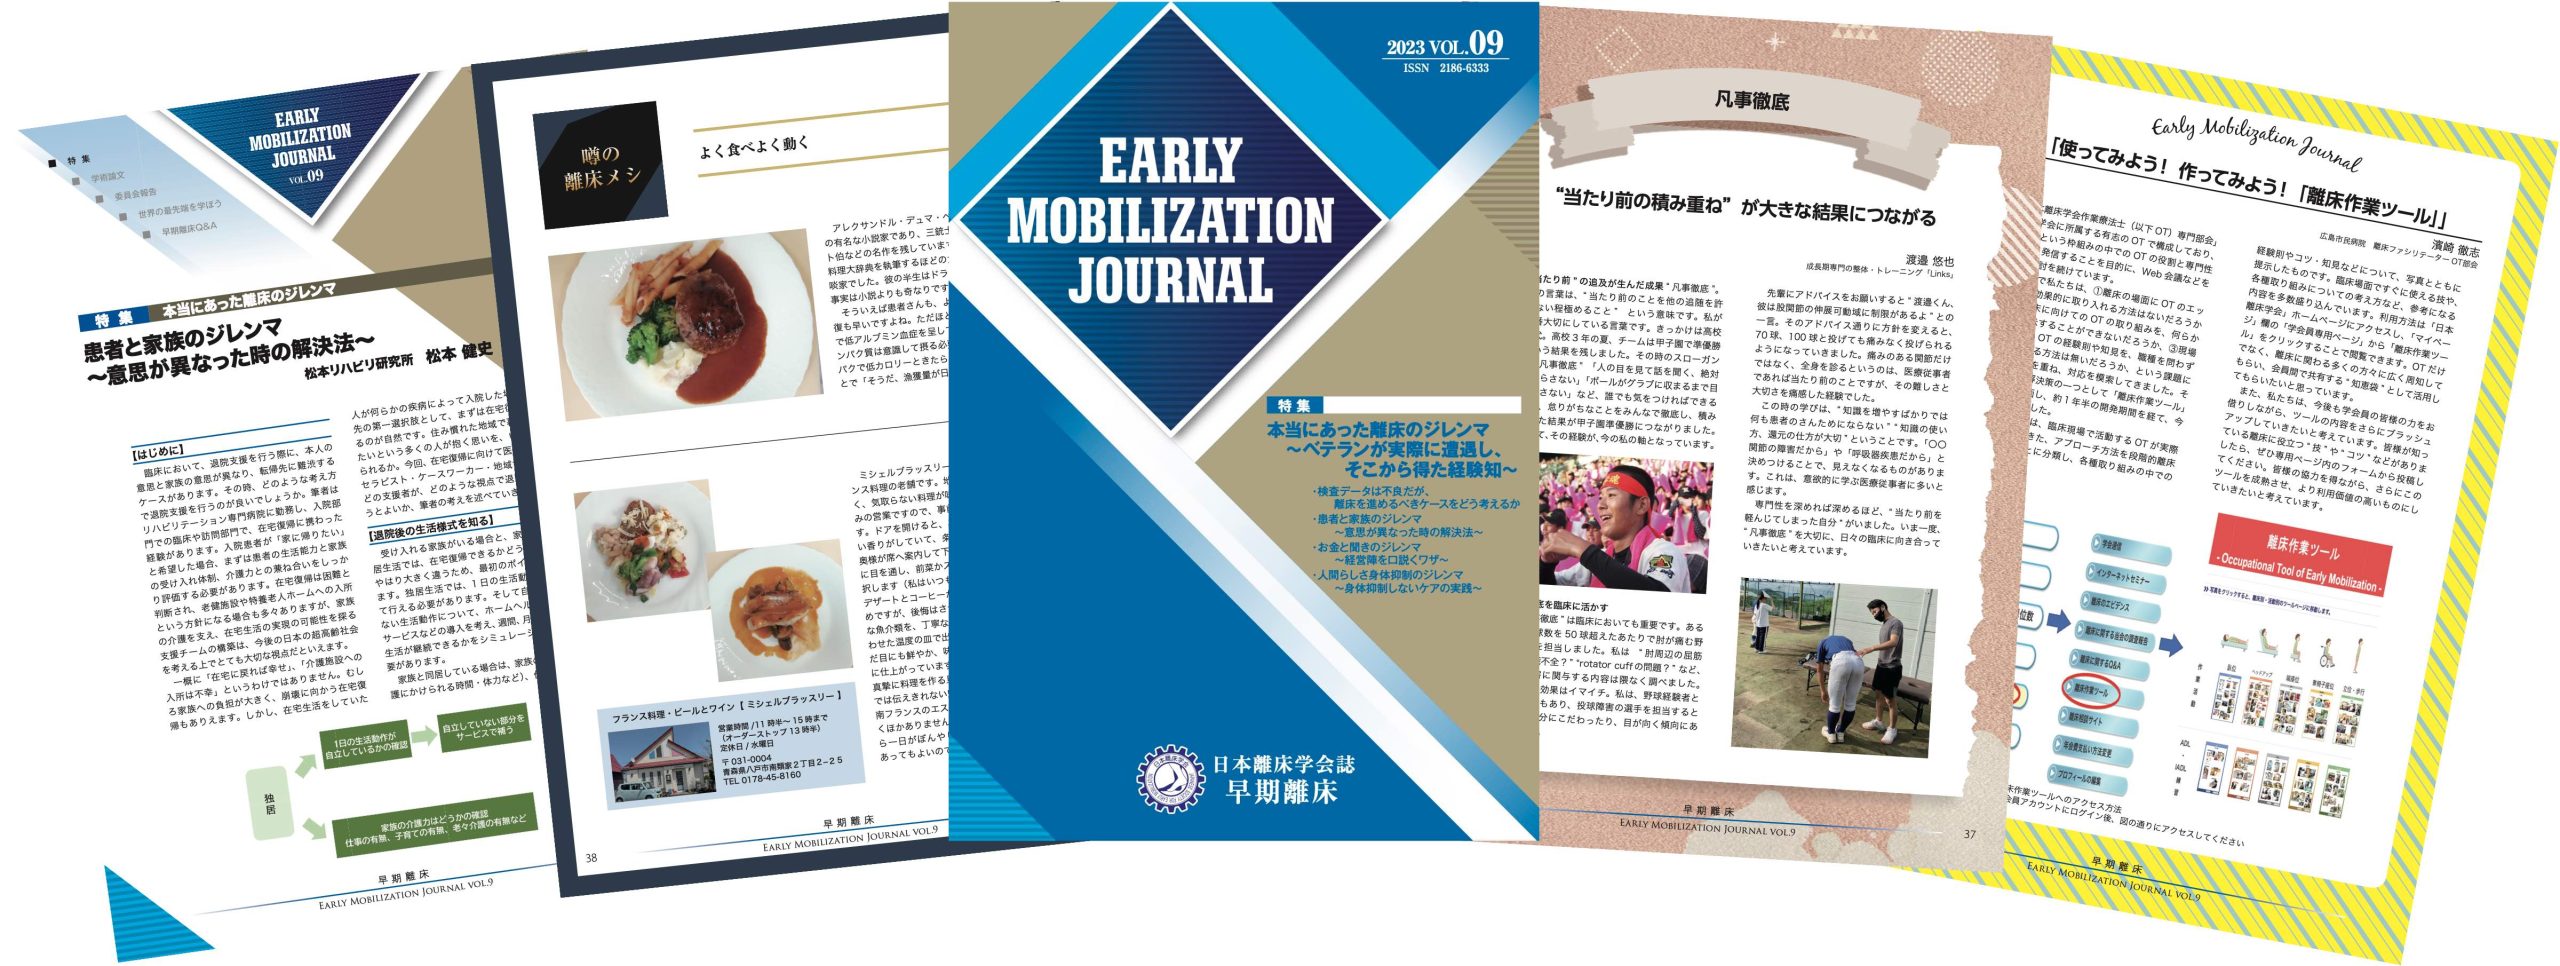 研究会誌「早期離床（英名 Early Mobilization Journal: EMJ）」2023 vol.9